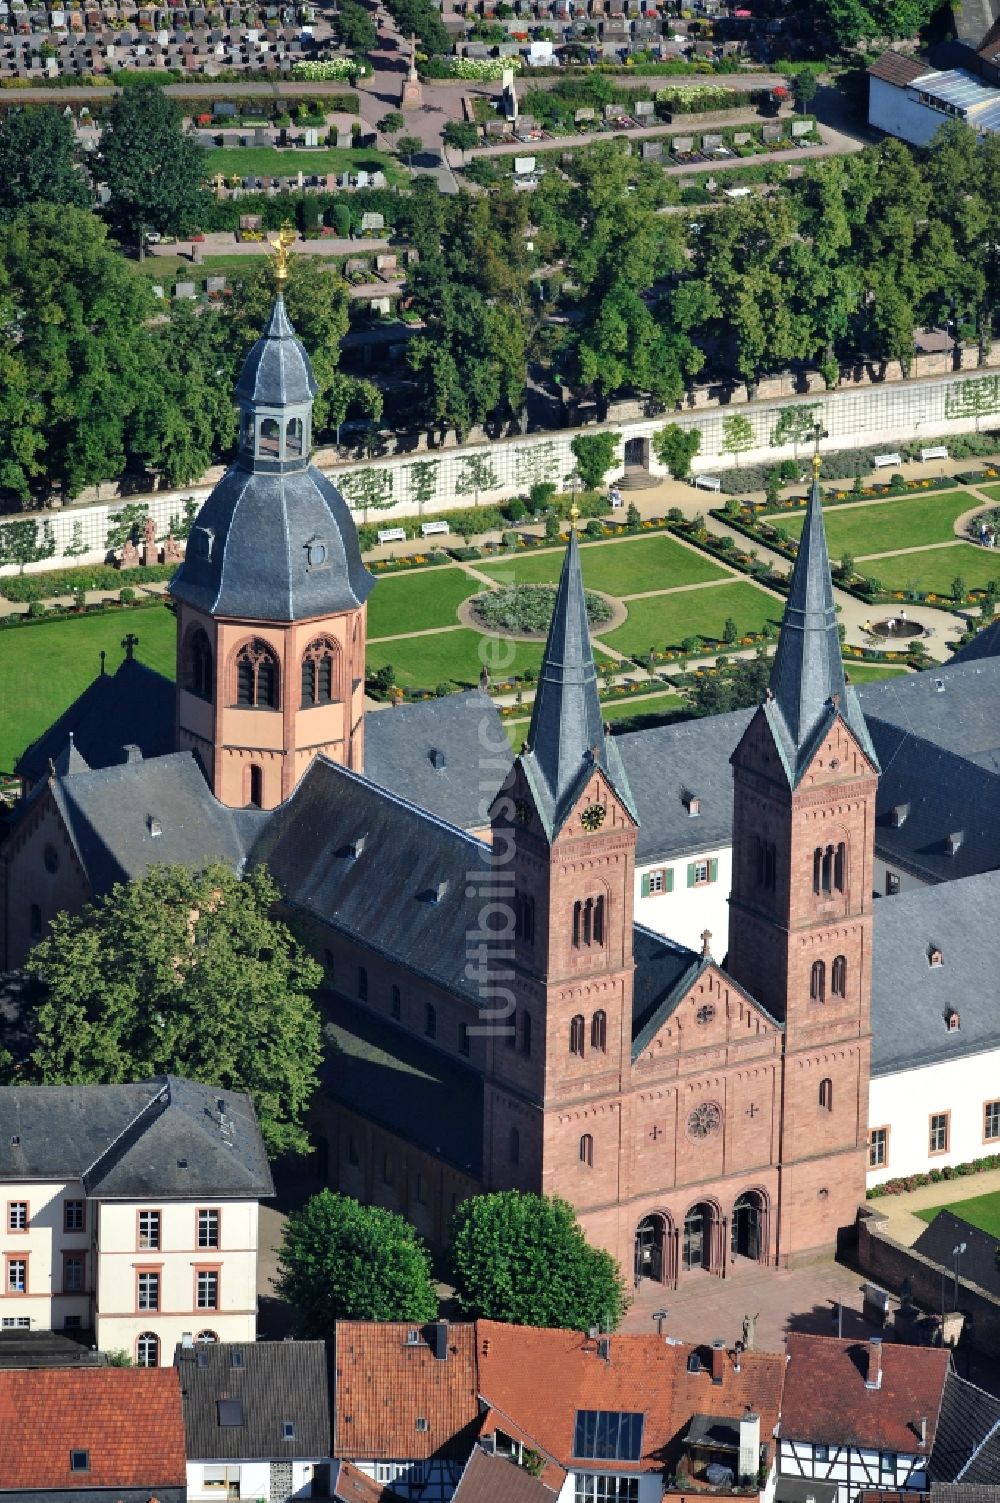 Luftbild Seligenstadt - Blick auf die Basilika St. Marcellinus und Petrus in Seligenstadt in Hessen